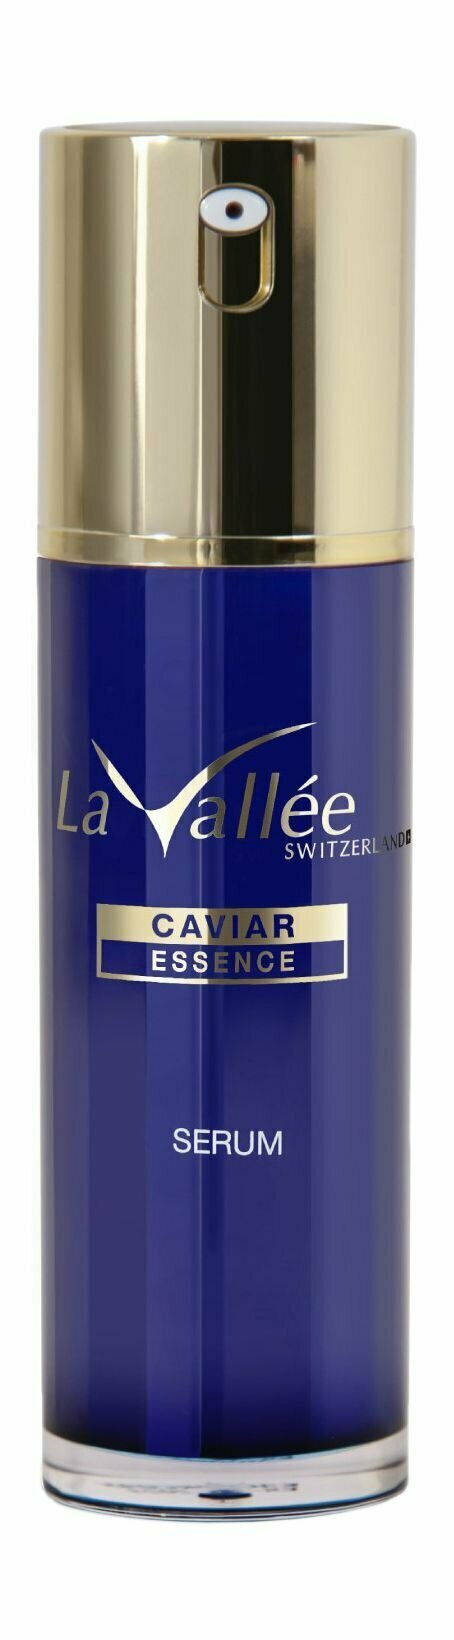 Антивозрастная сыворотка для лица с икорным экстрактом / La Vallee Caviar Essence Serum